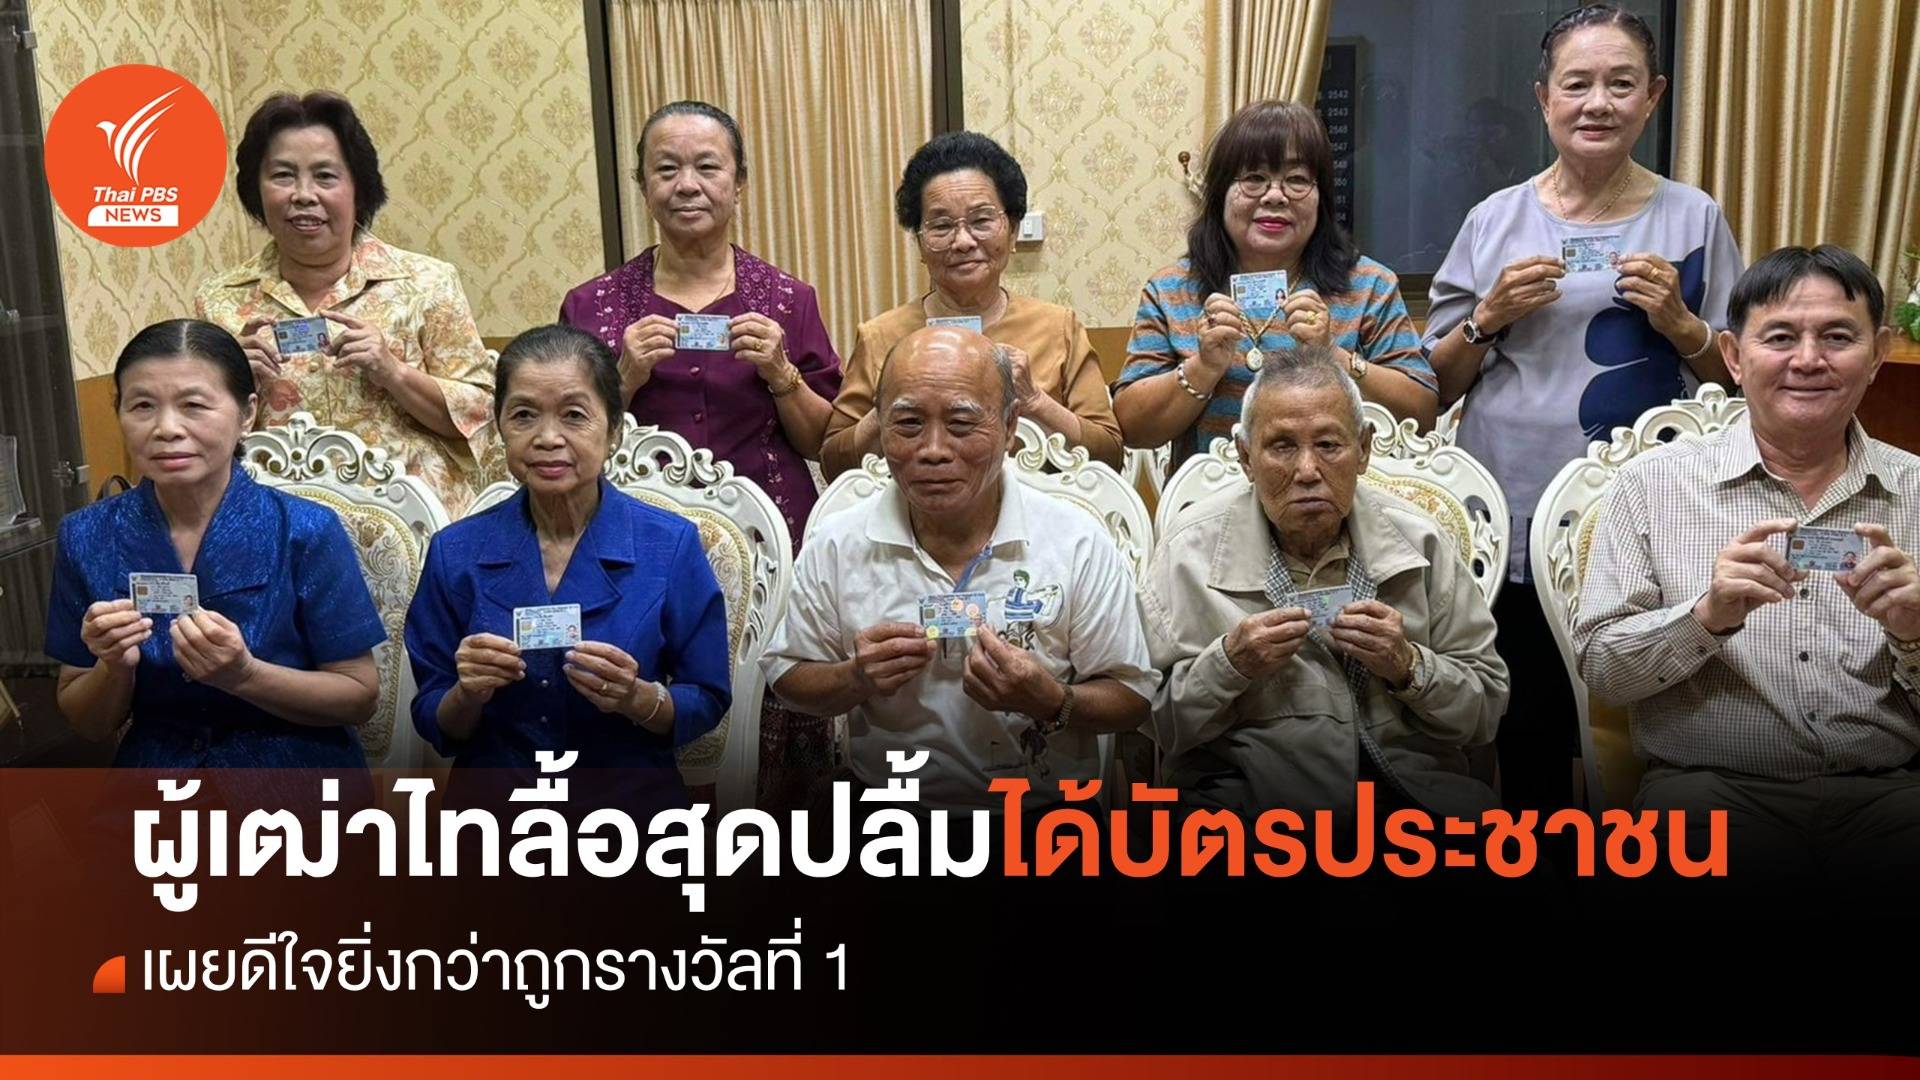 "ผู้เฒ่าไร้สัญชาติ" สุดปลื้มได้บัตรประชาชนไทย